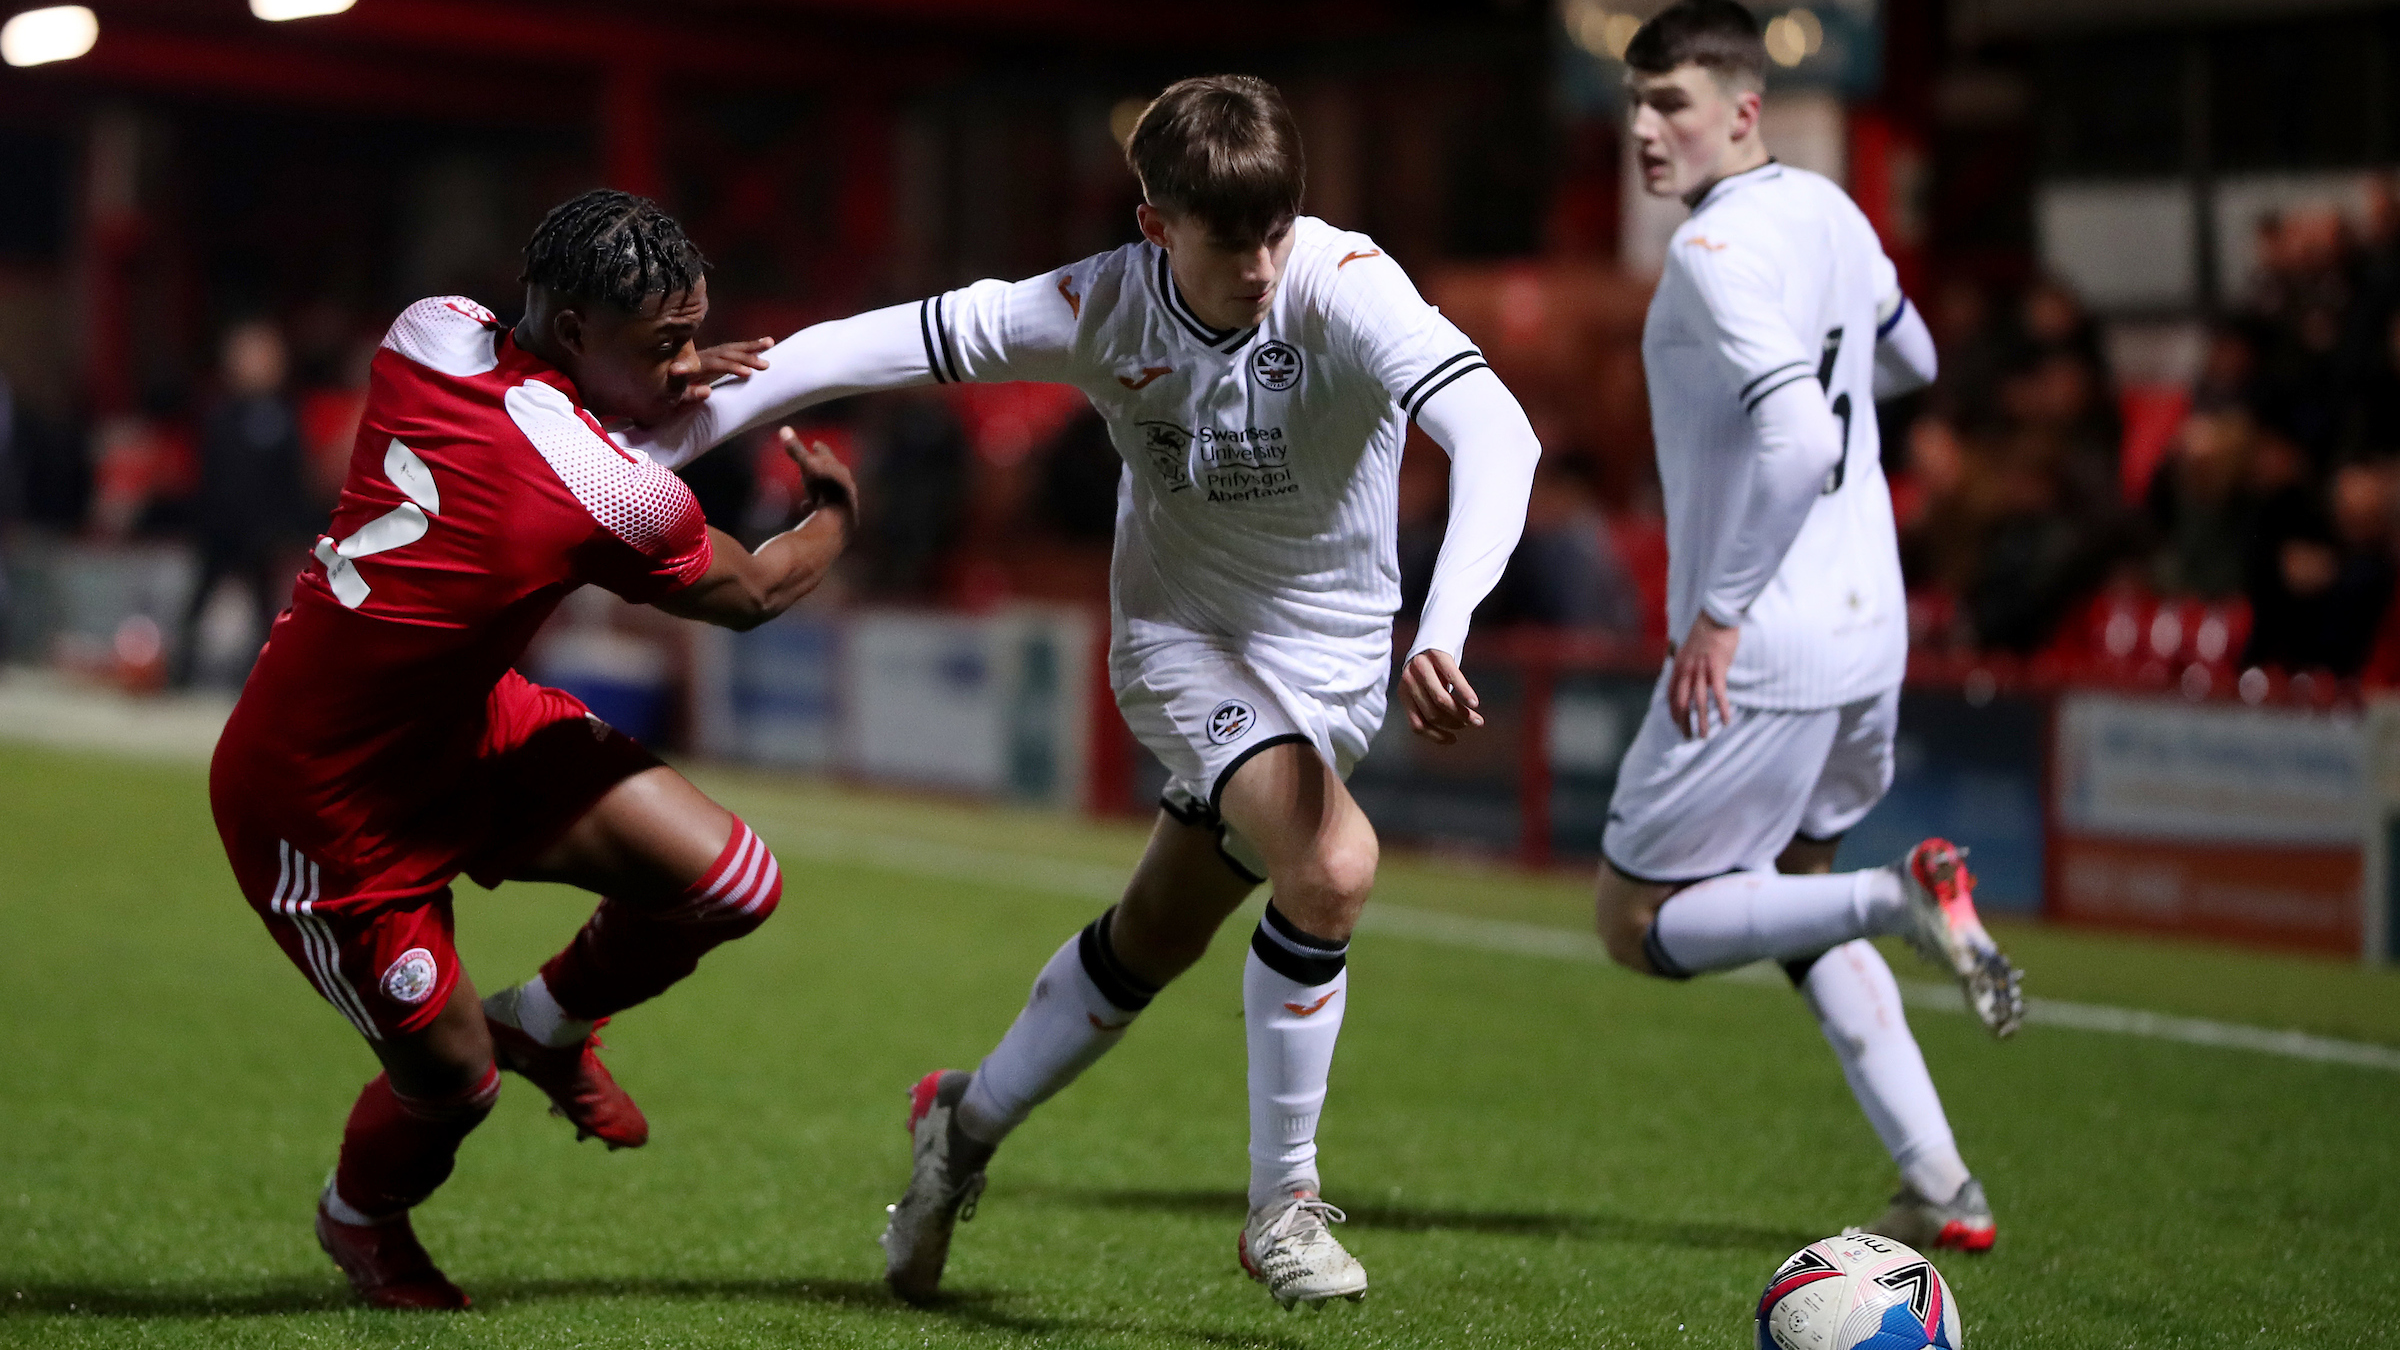 Swansea City Under-18s Ben Lloyd